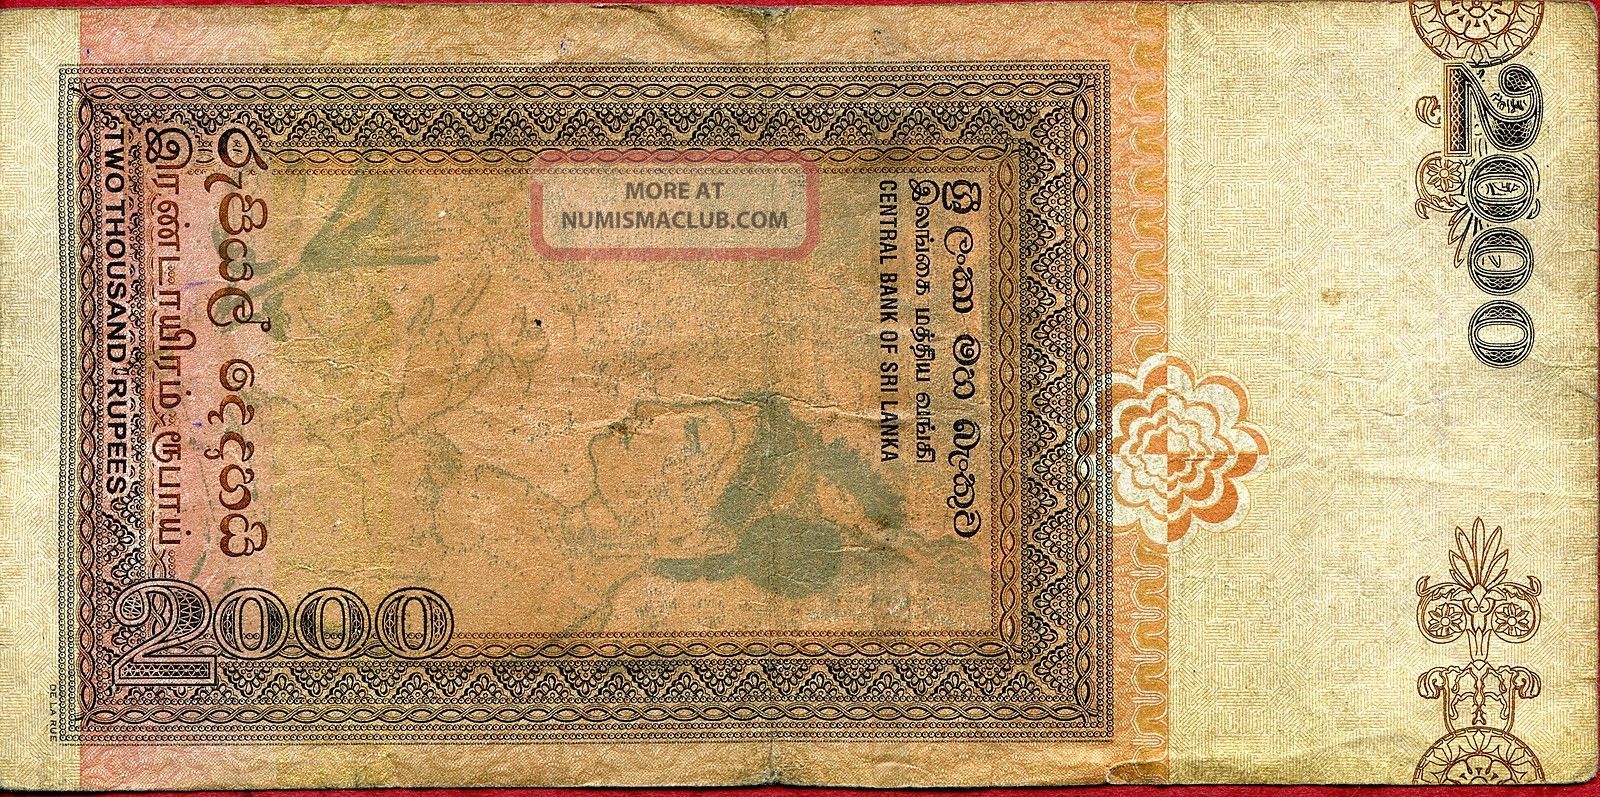 Sri Lanka 2, 000 2000 Rupees 2006 P - F